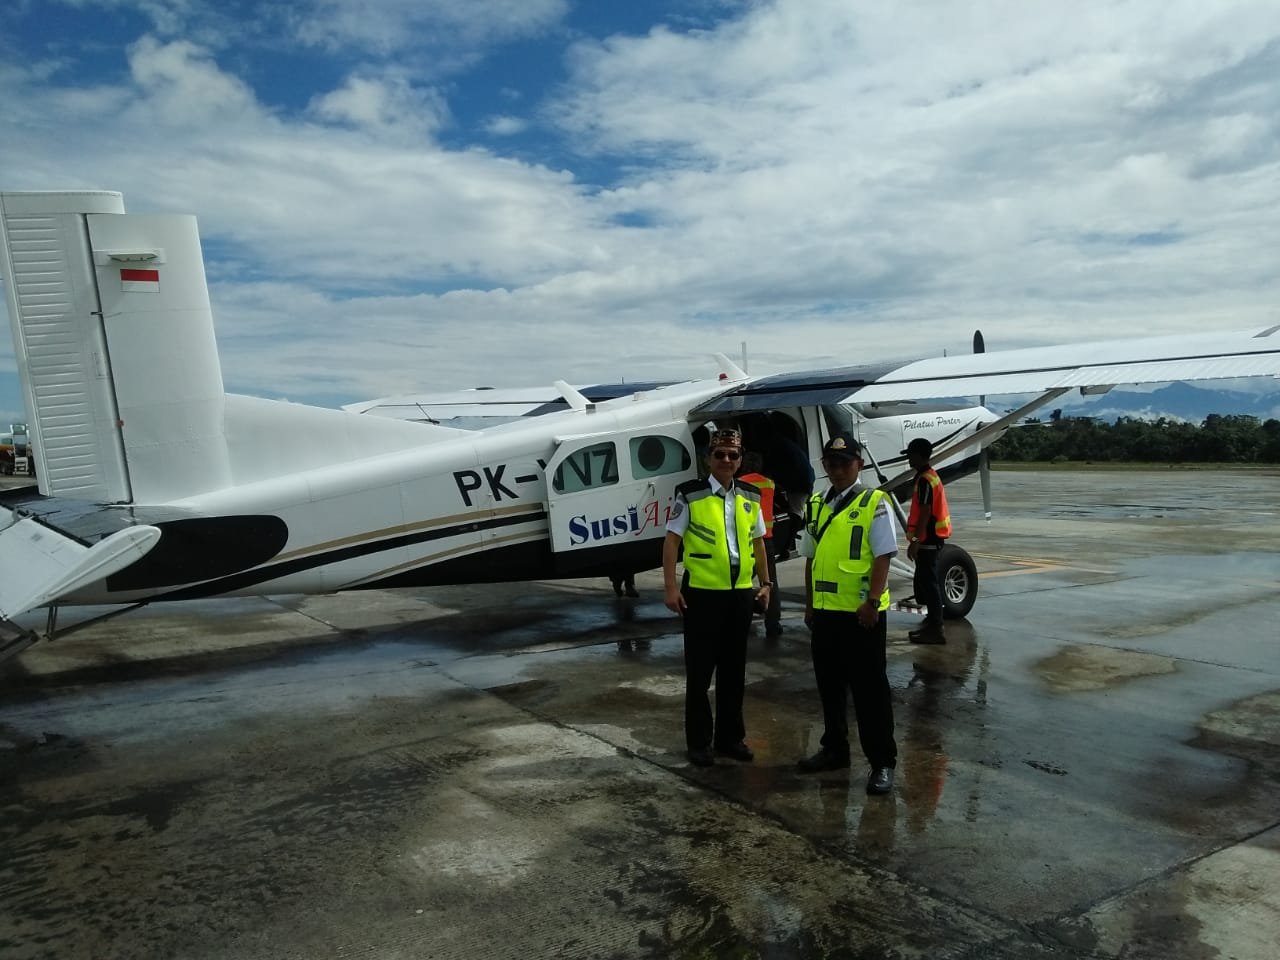 Melayani Pedalaman dengan Angkutan Udara Perintis Pilatus PC-6, Cerita Mantan Kaotban Usman Effendi Menerbangi Langit Papua